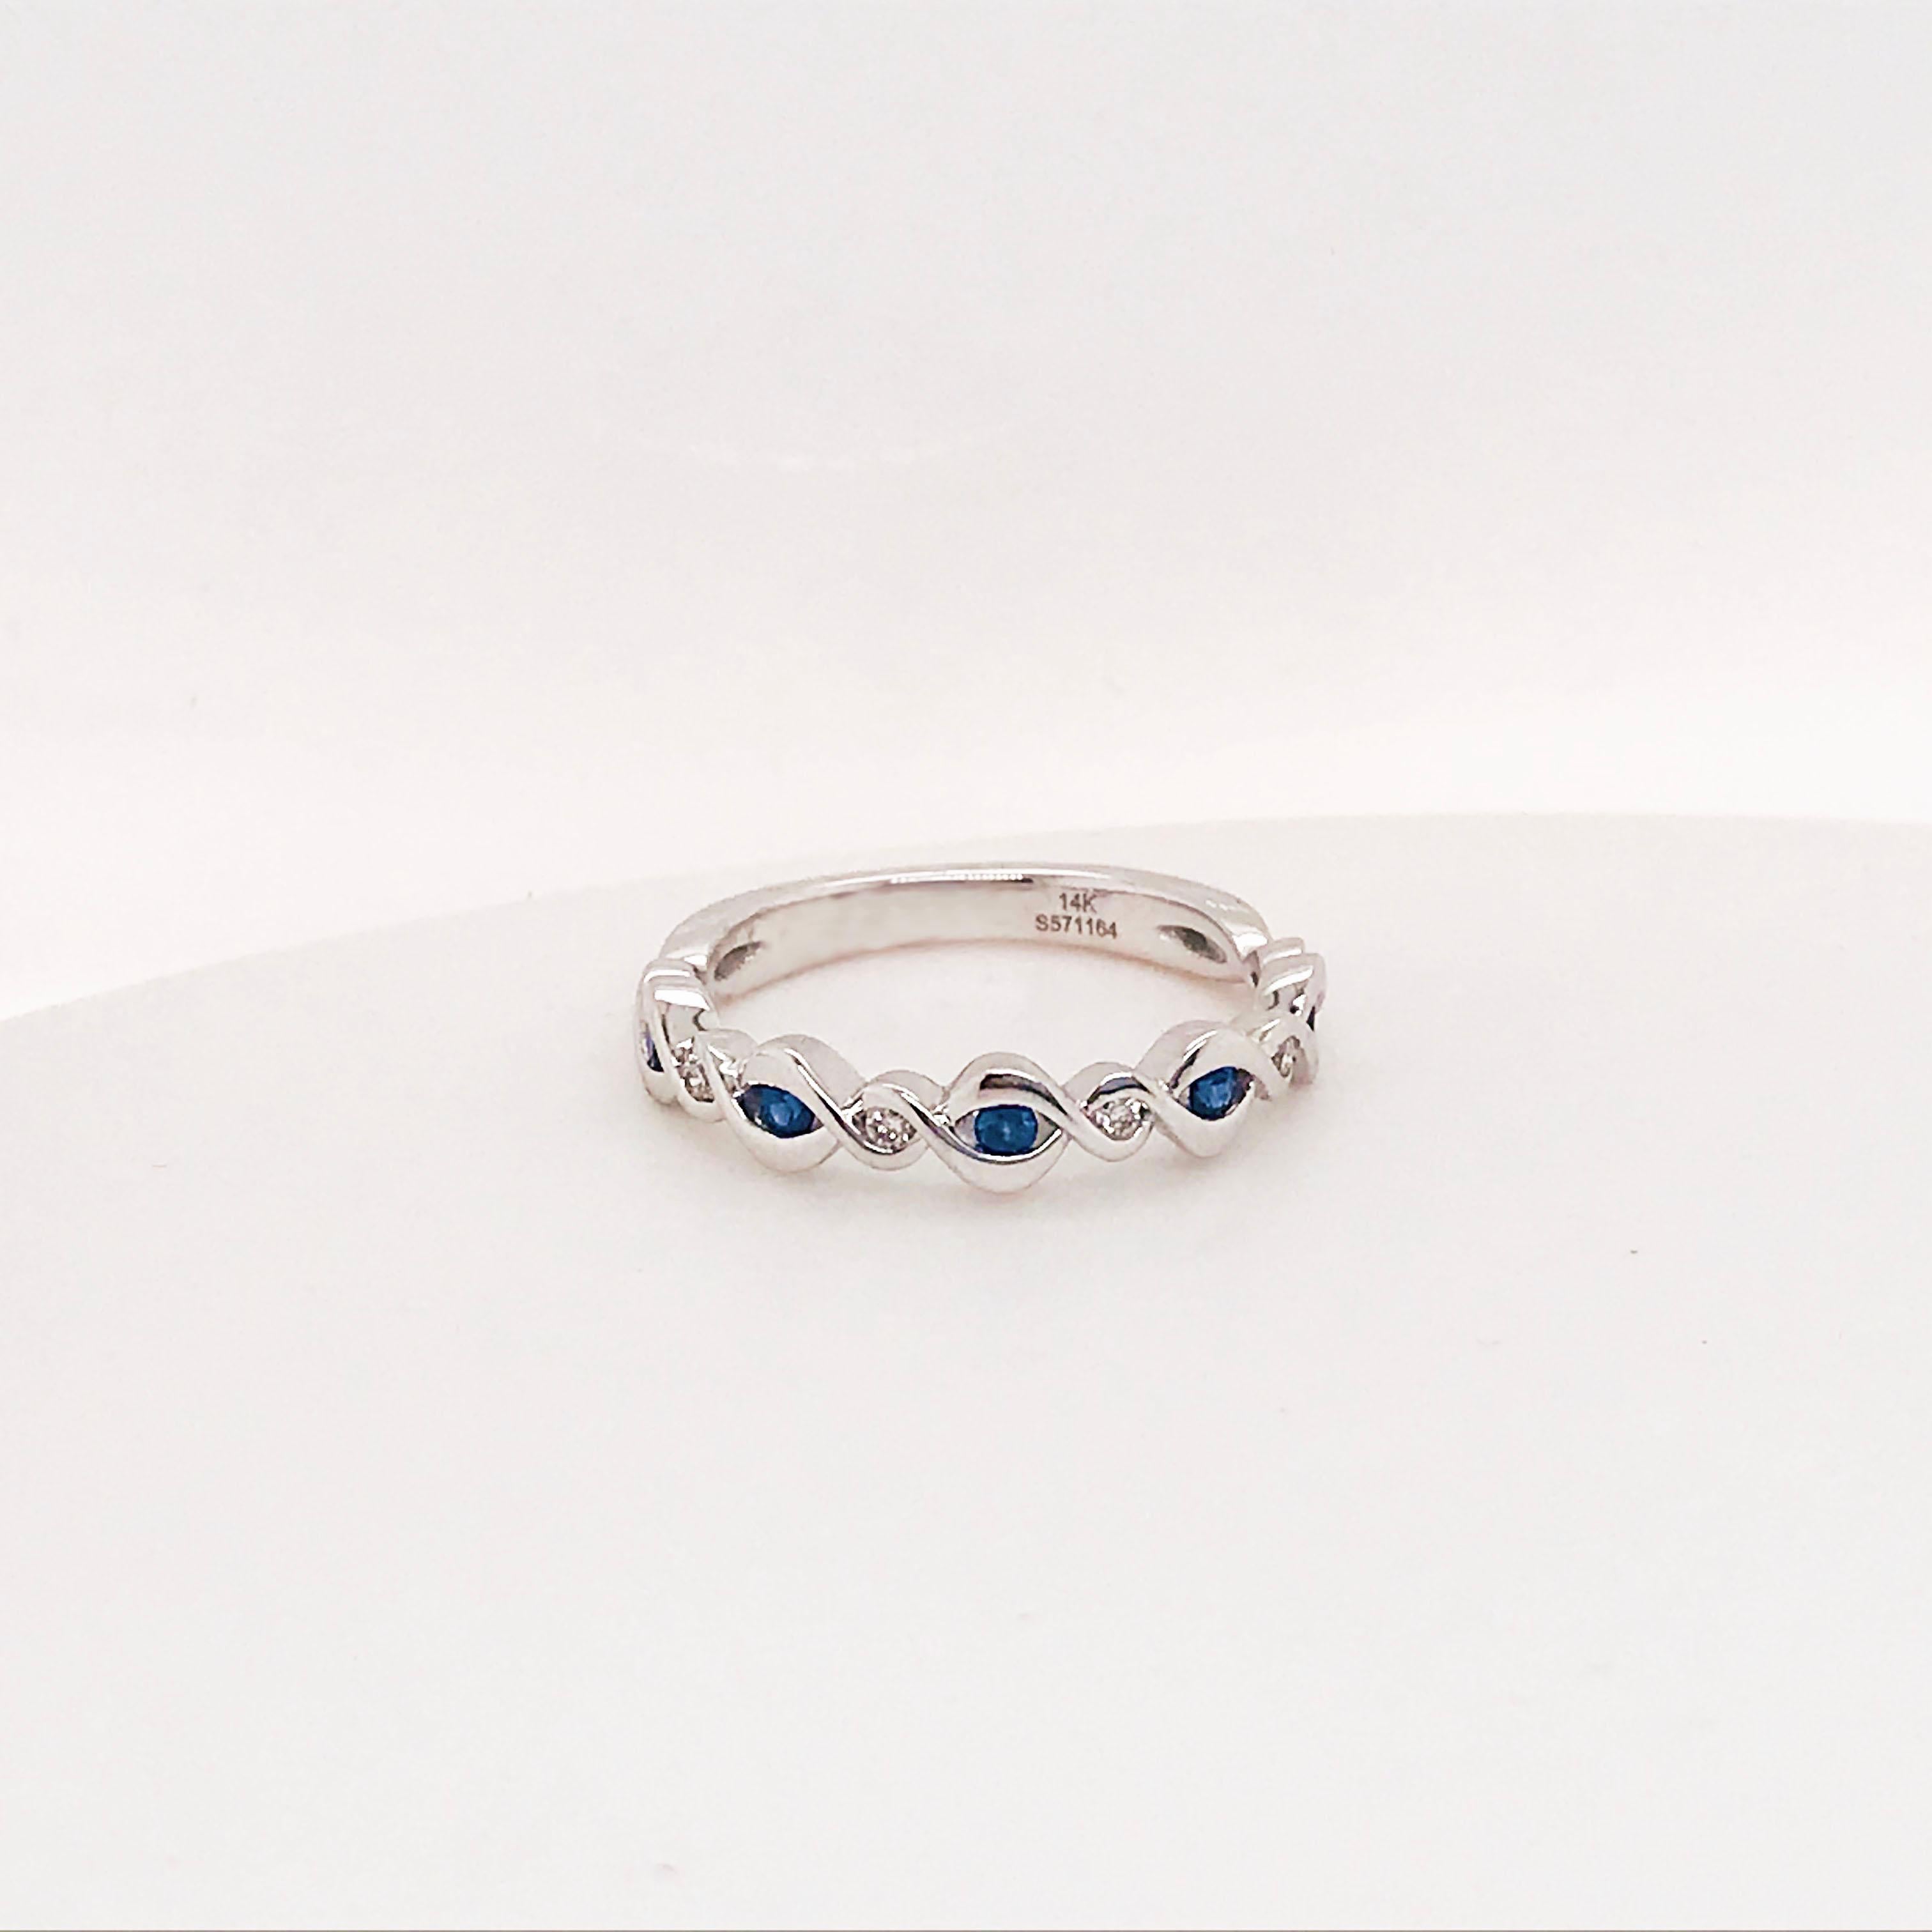 Bracelet en saphir bleu et diamant avec un design fantaisiste pour toujours ! Cette magnifique bague en or blanc 14 carats est ornée de saphirs bleus véritables et de diamants ronds brillants naturels qui s'alternent en séquence. Les saphirs bleus